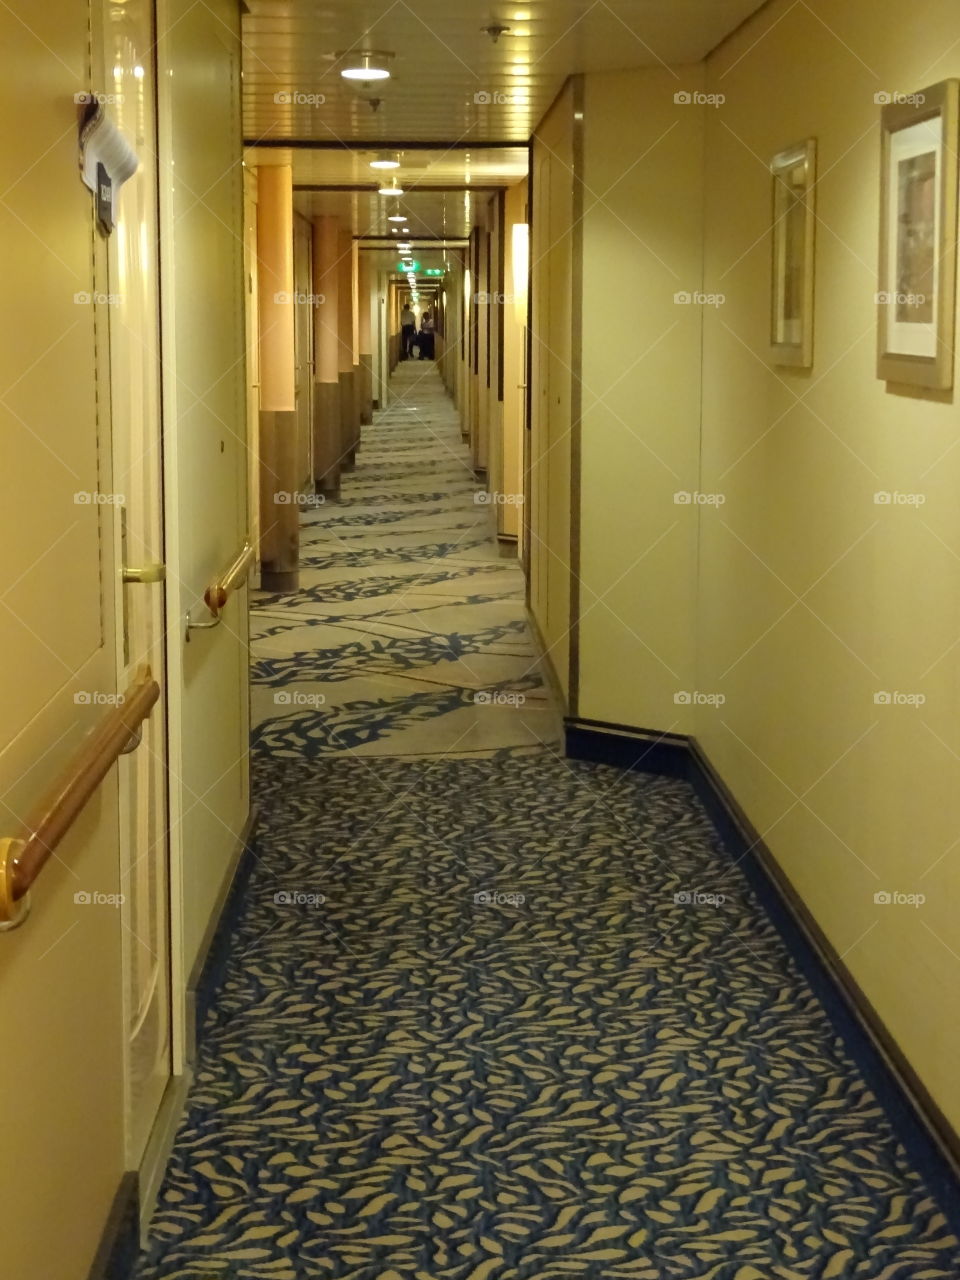 A long hallway